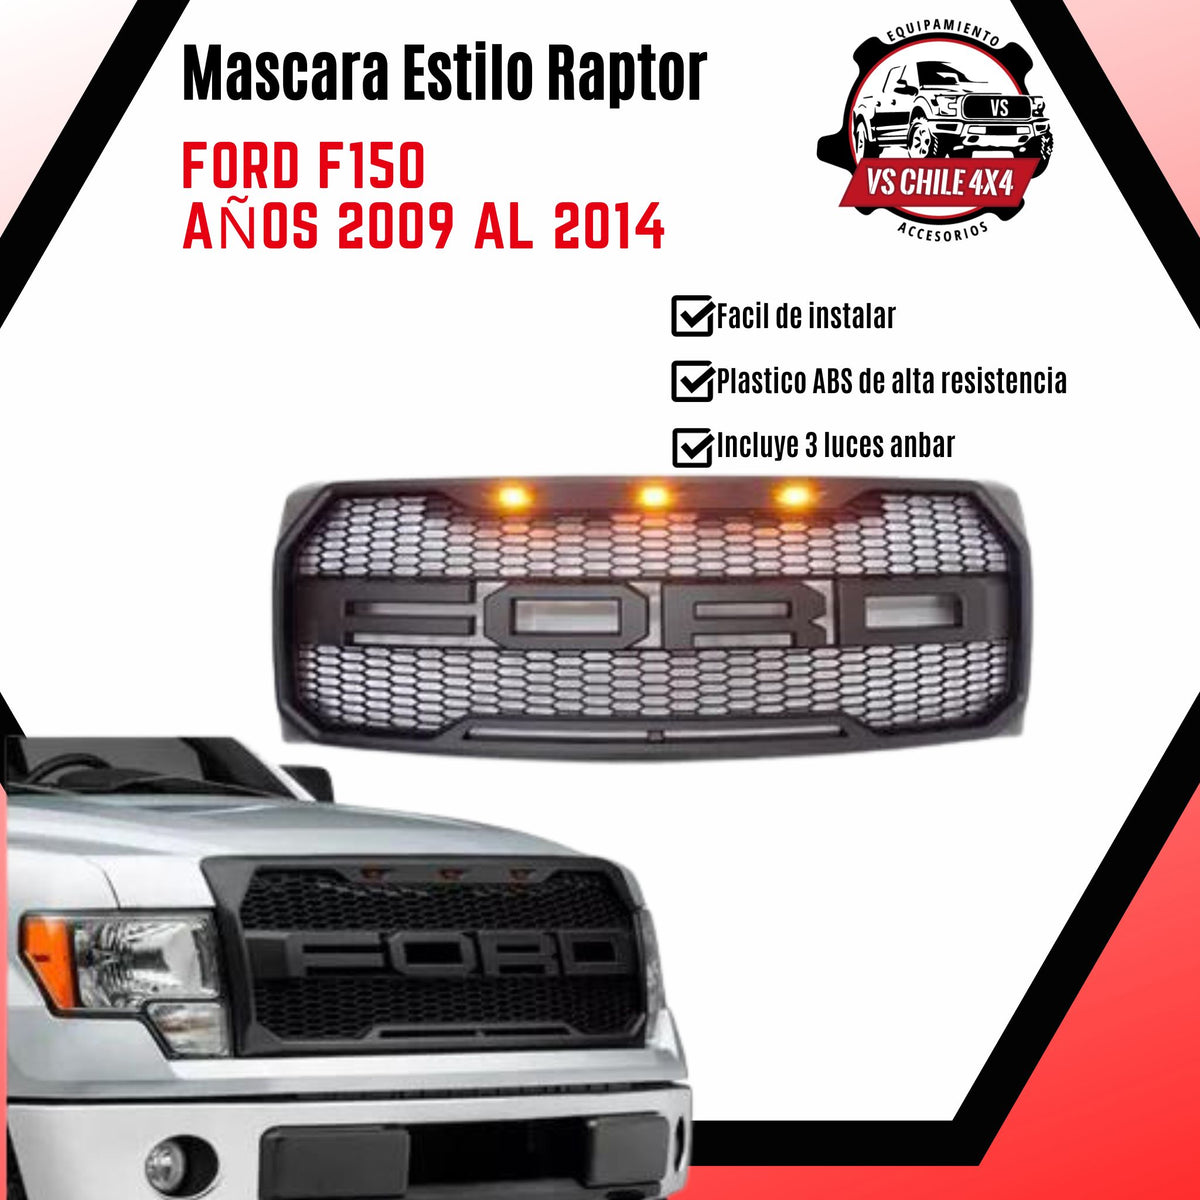 Máscara Estilo Raptor Exclusiva para FORD F150 años 2009 al 2014 Transforma tu Camioneta!